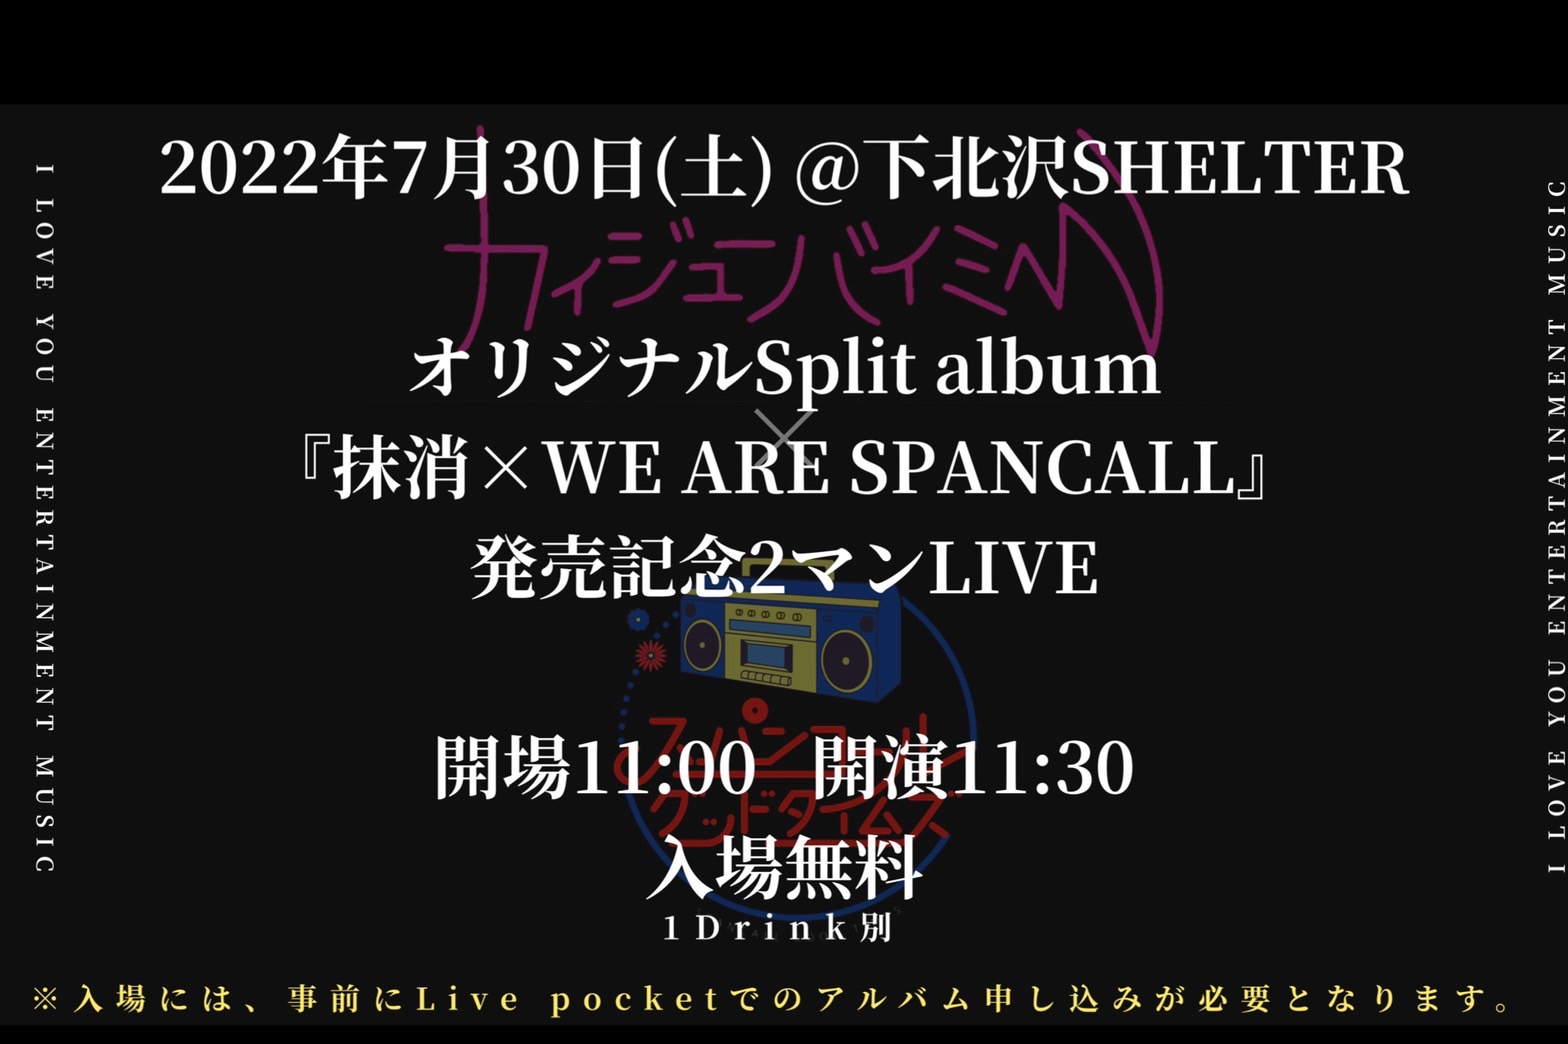 カイジューバイミー✖スパンコールグッドタイムズ オリジナルSplit album 『抹消×WE ARE SPANCALL』 発売記念2マンLIVE